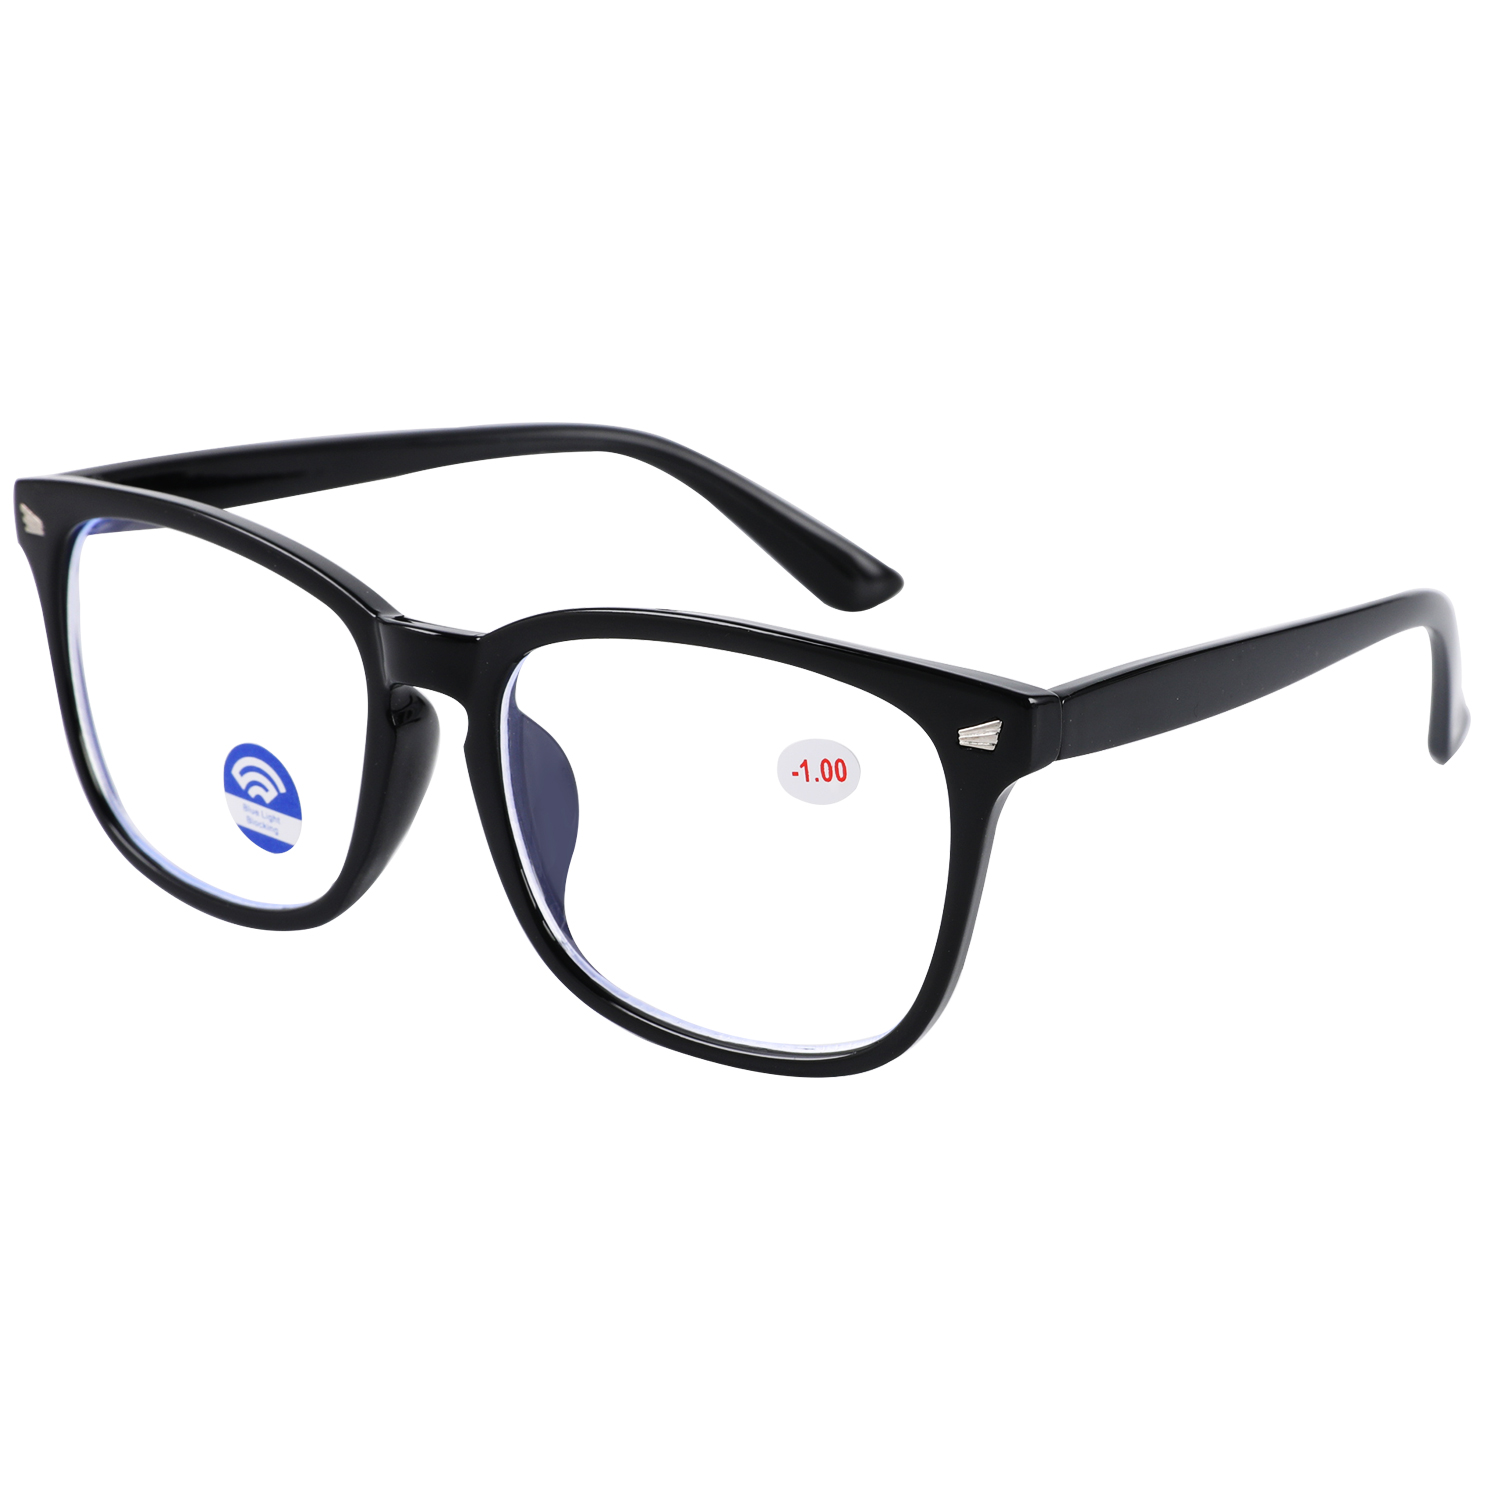 外贸爆款板材欧美新款超轻防蓝光近视眼镜批发光学眼镜560 5234图